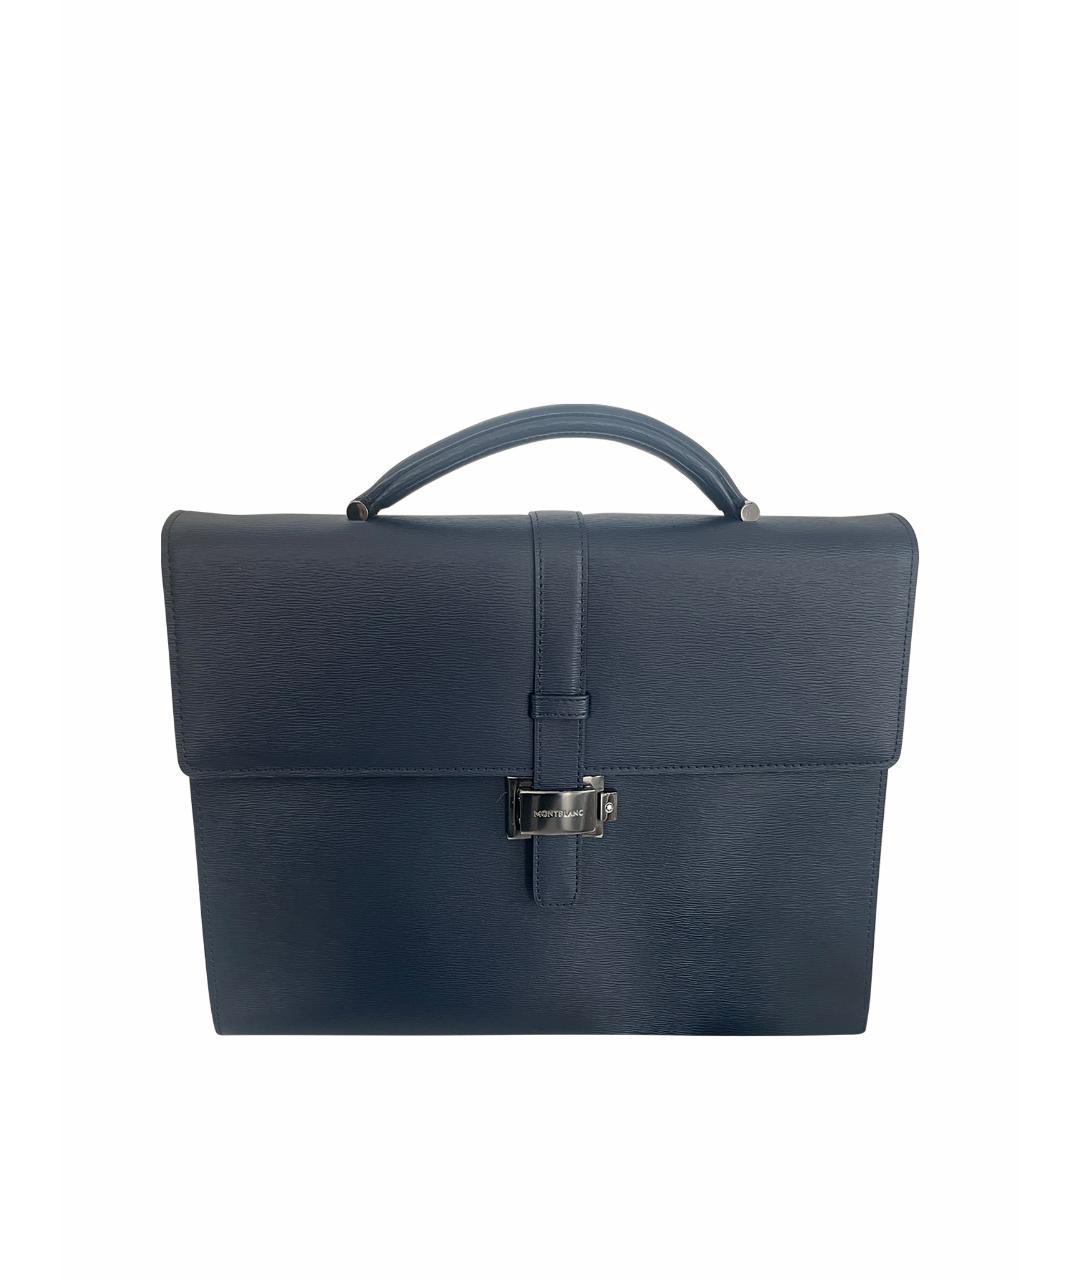 MONTBLANC Голубой кожаный портфель, фото 1